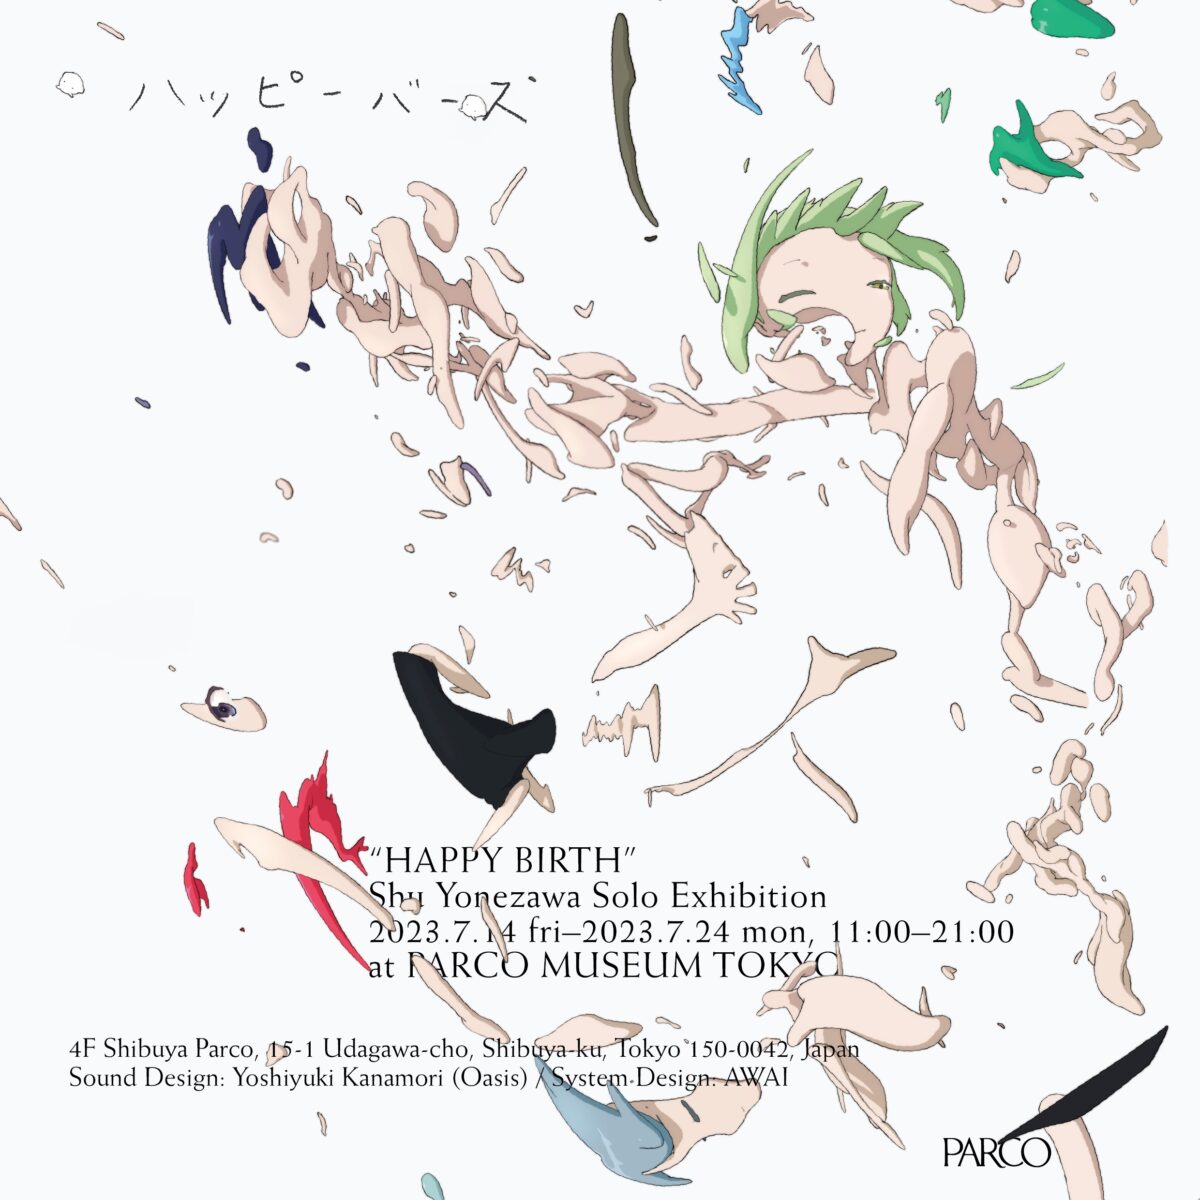 アーティスト米澤柊による初の大規模個展「ハッピーバース」Shu Yonezawa Solo Exhibi...